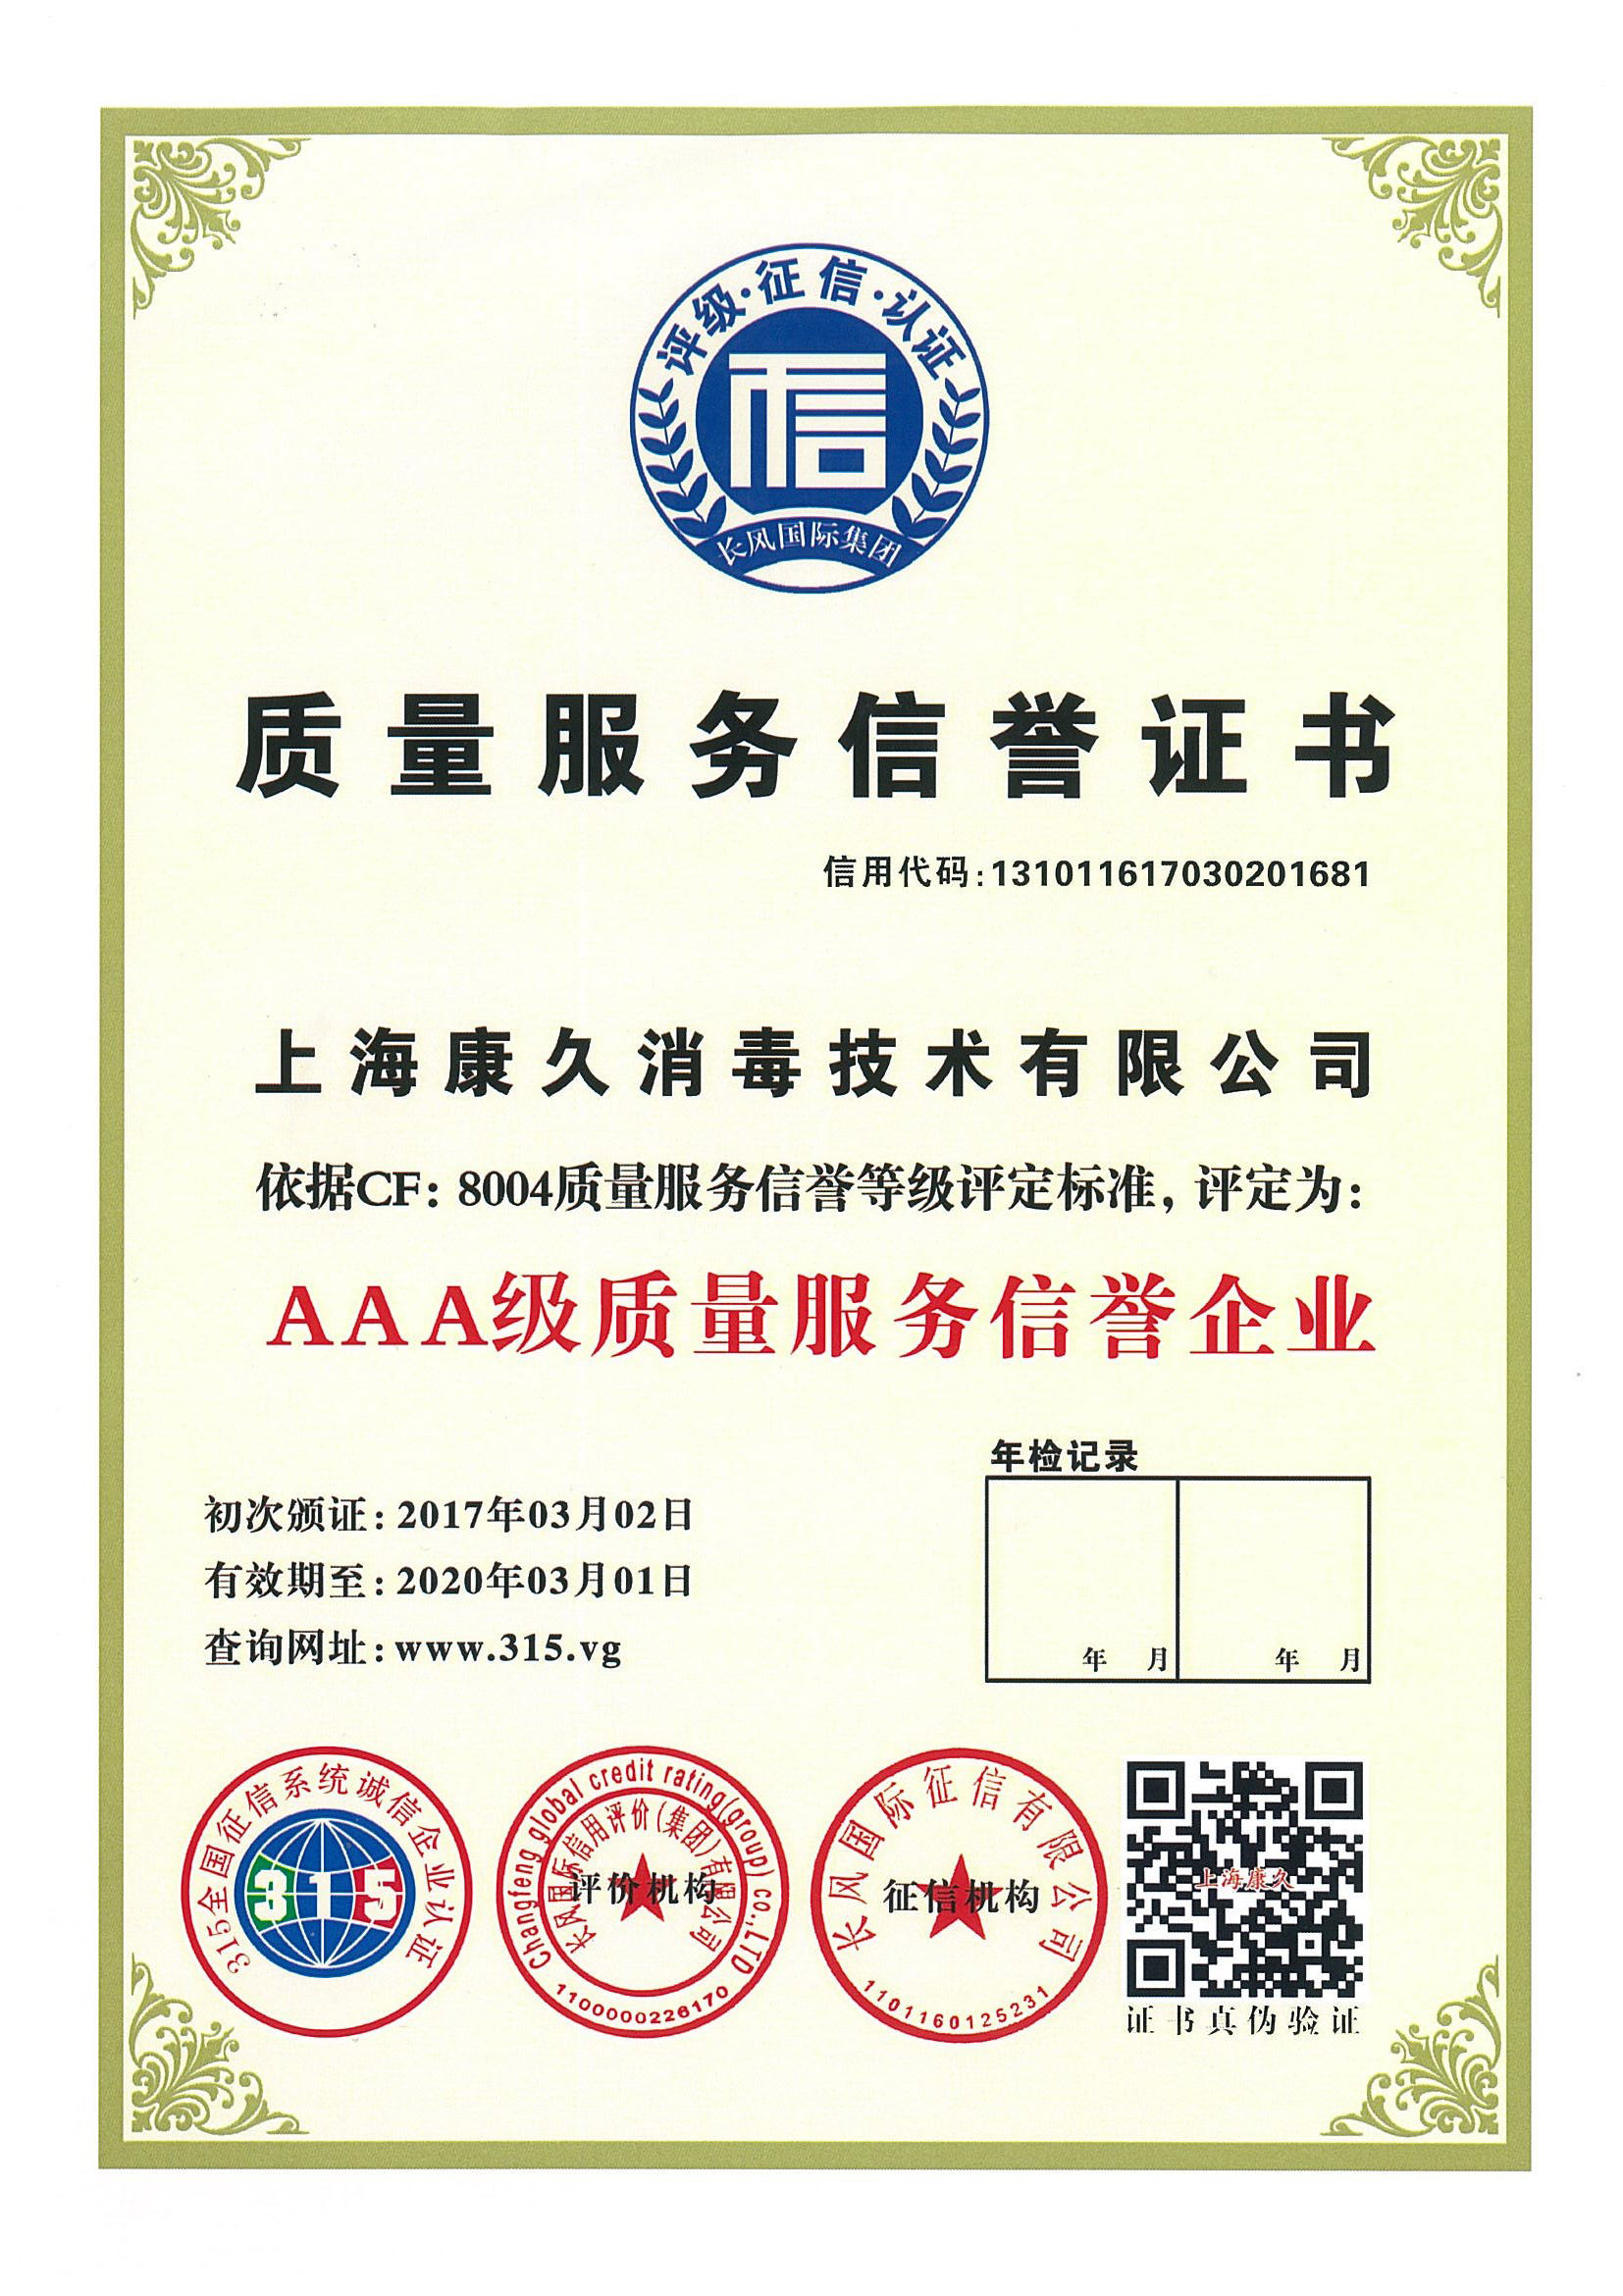 “红桥质量服务信誉证书